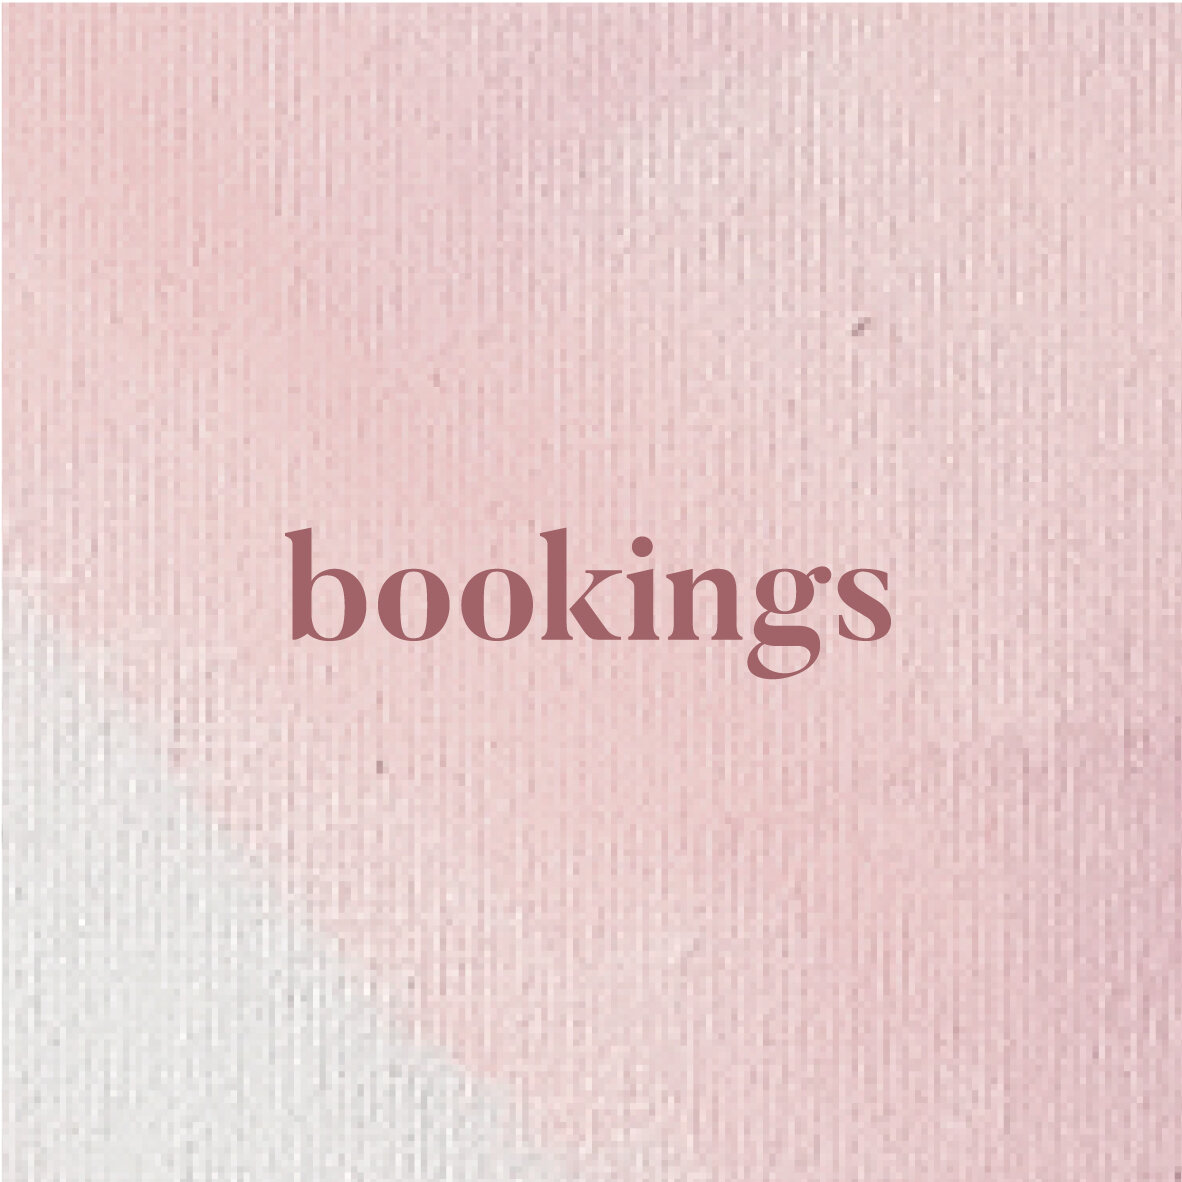 bookings.jpg